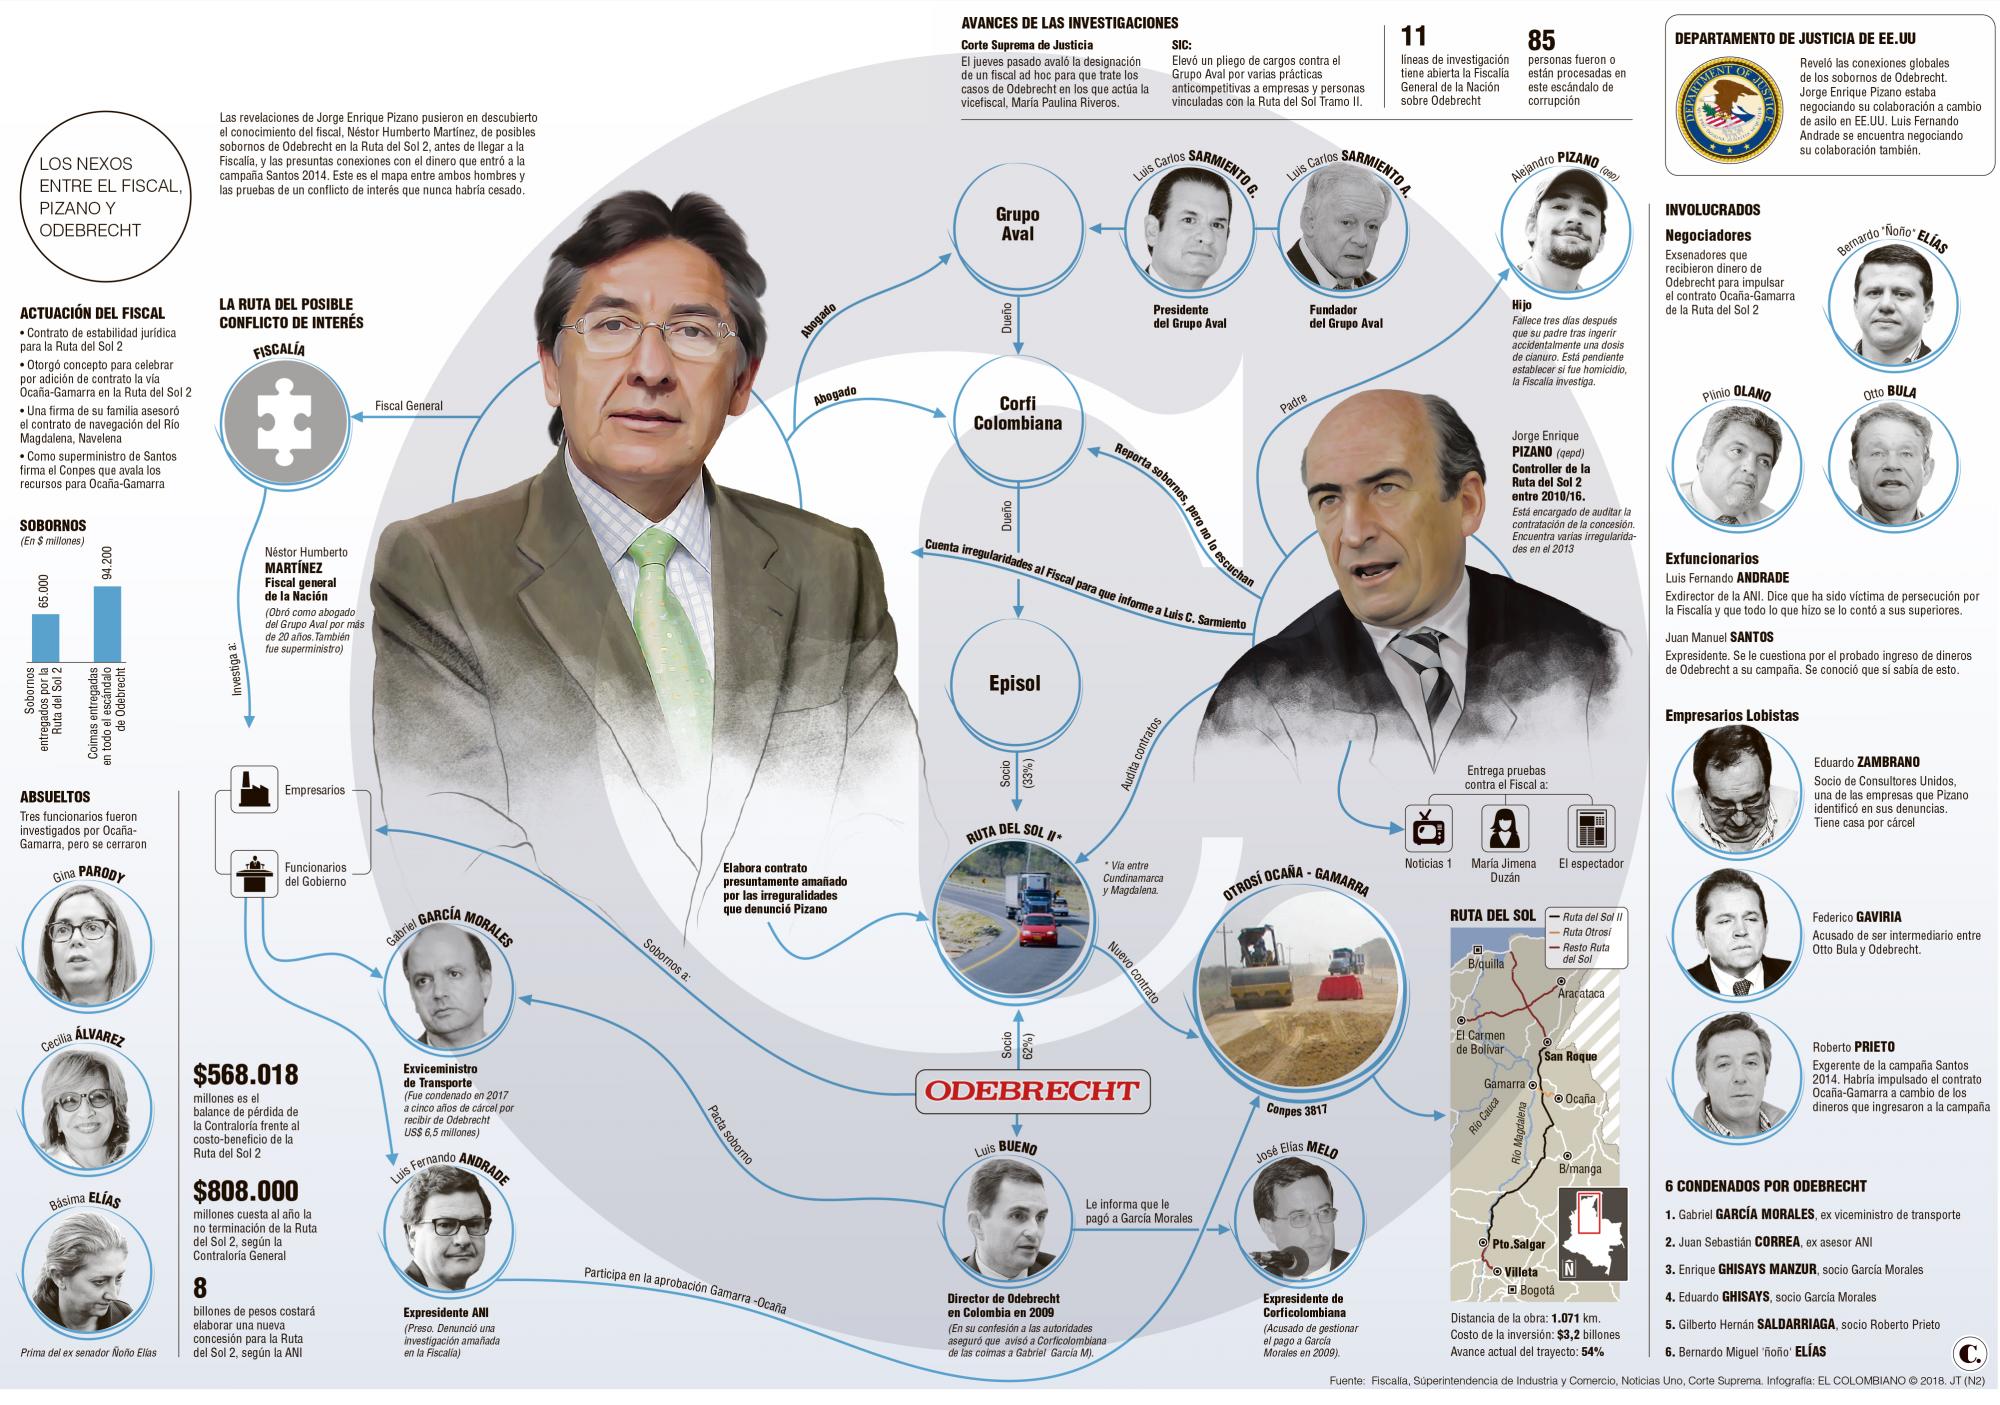 El mapa de la polémica entre el fiscal, Aval y el caso Odebrecht